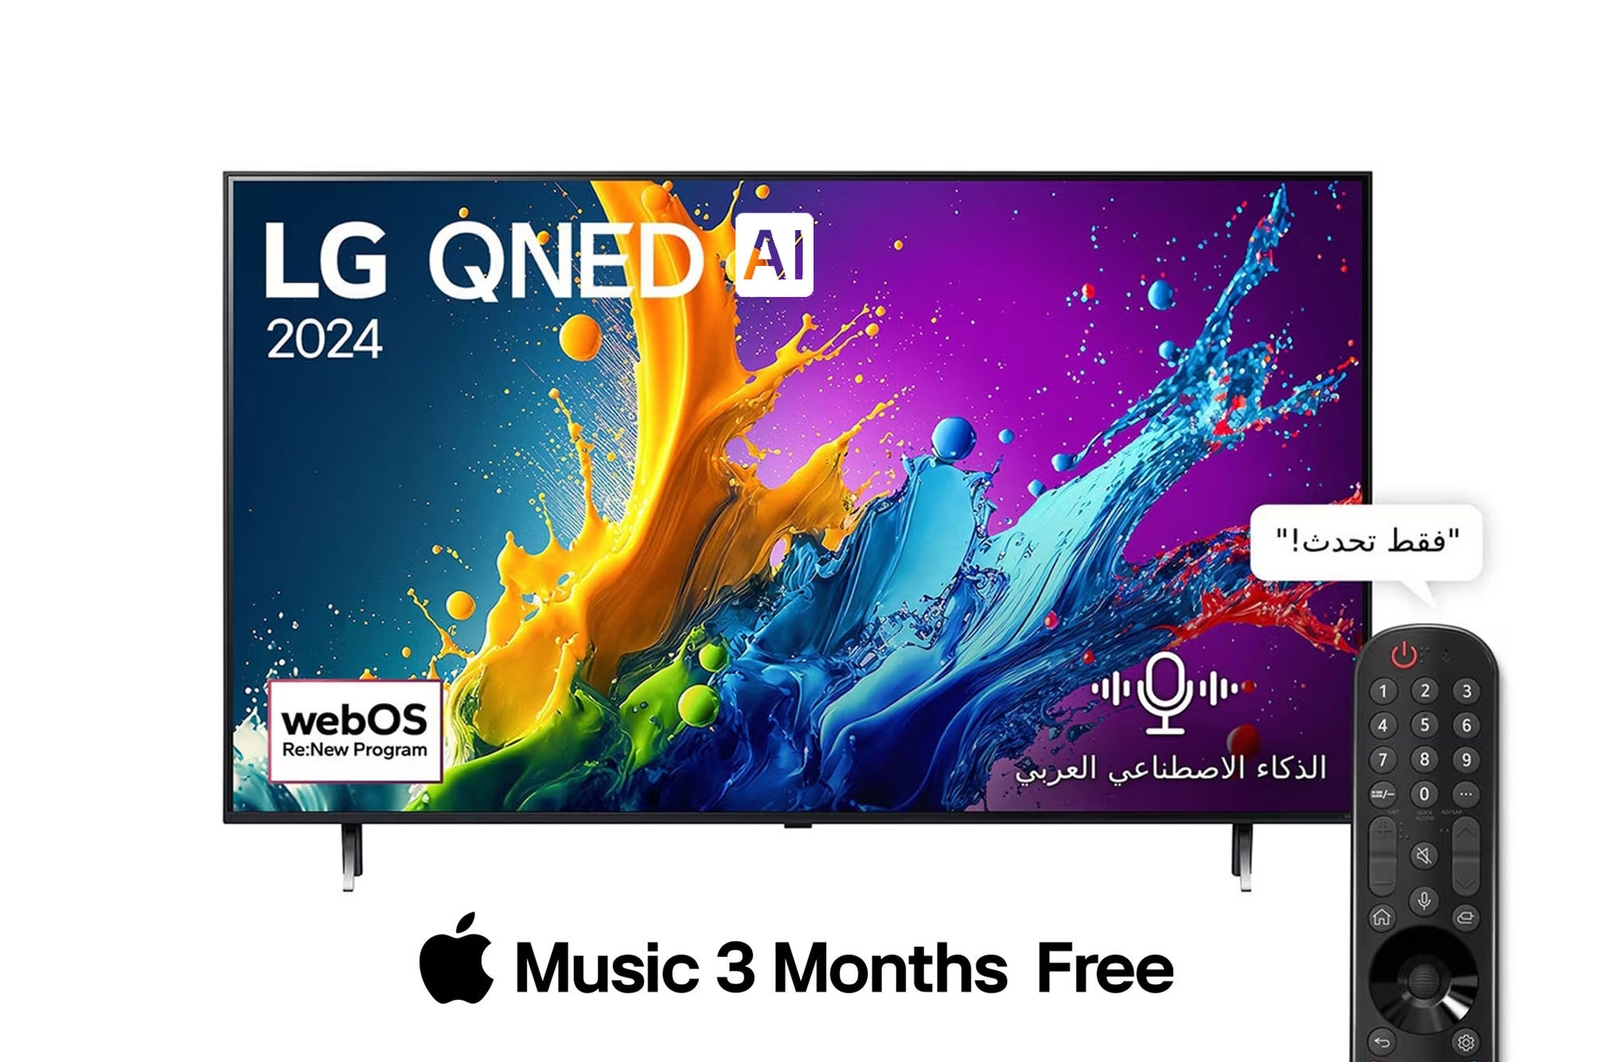 صورة أمامية لتلفزيون LG QNED TV، وQNED80 وعلى شاشته يظهر النص LG QNED، لعام 2024، وشعار webOS Re:New Program